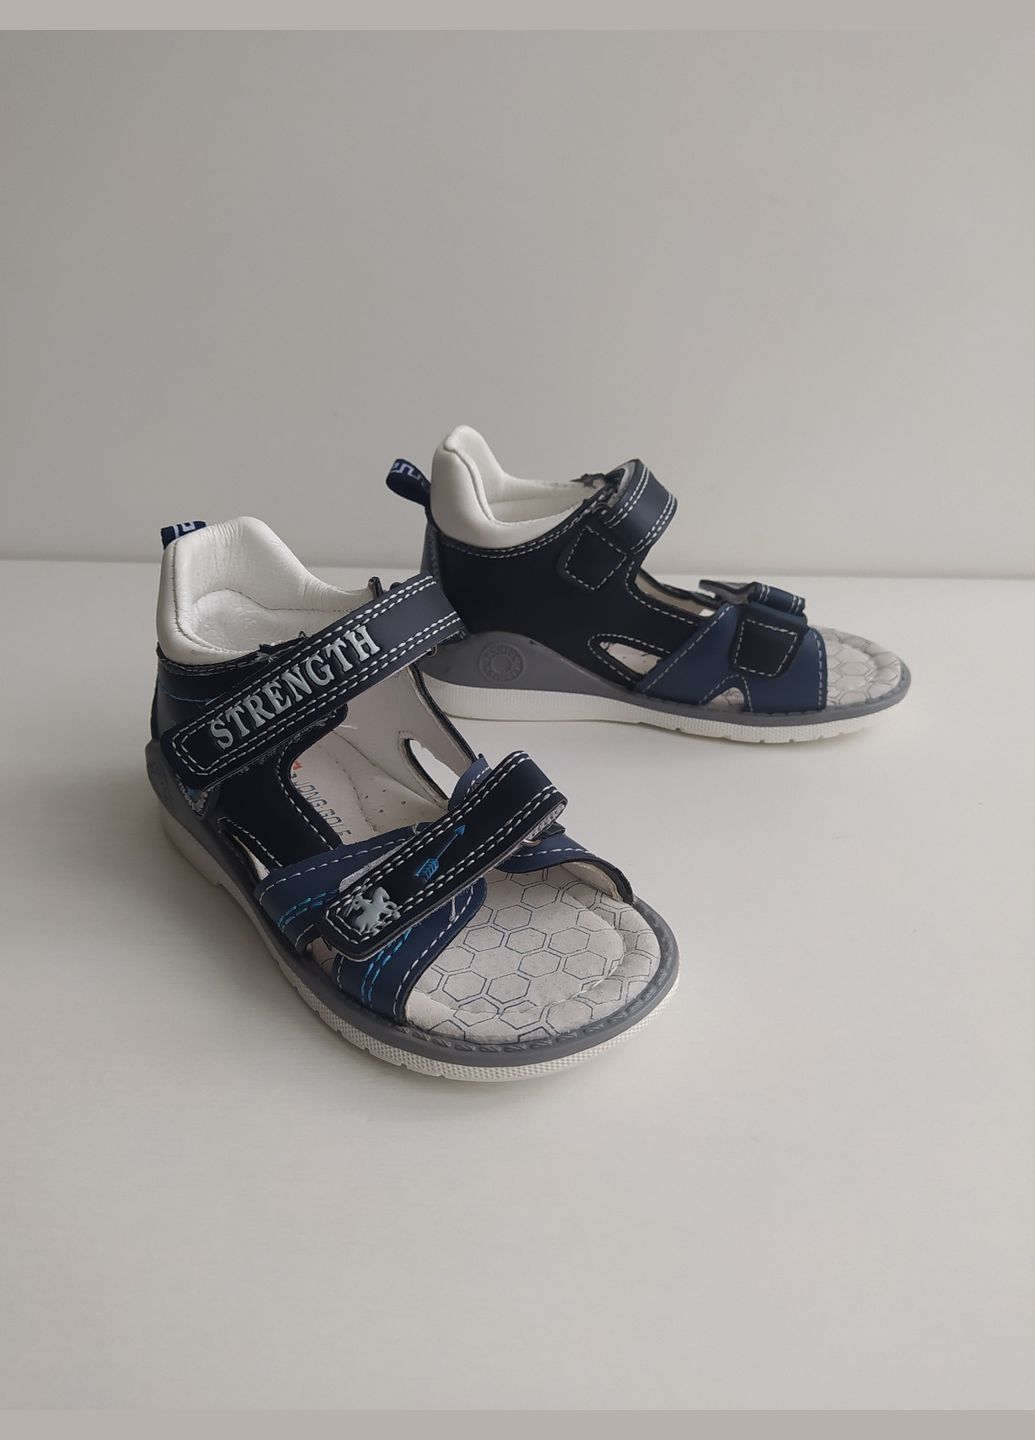 Синие детские сандалии 26 г 16,2 см синий артикул б165 Jong Golf